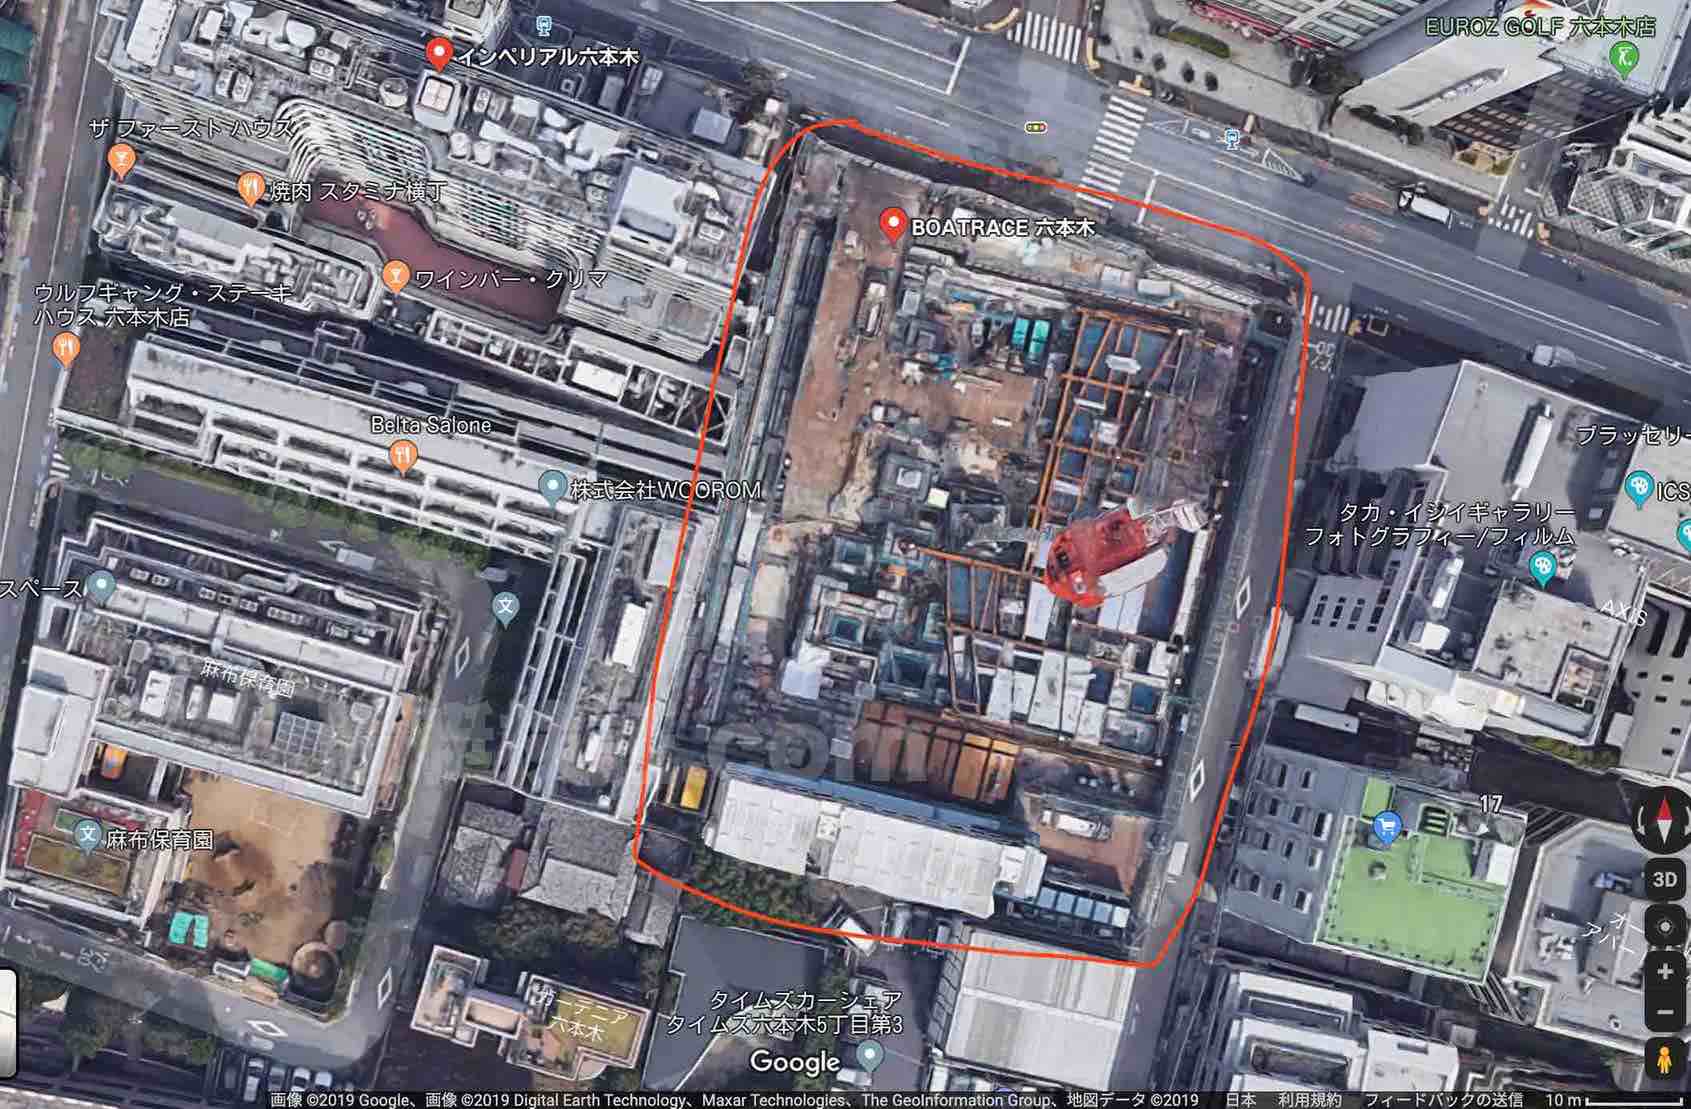 競艇BOATRACE振興会の本社ビル建設現場のgoogleマップによる上空写真